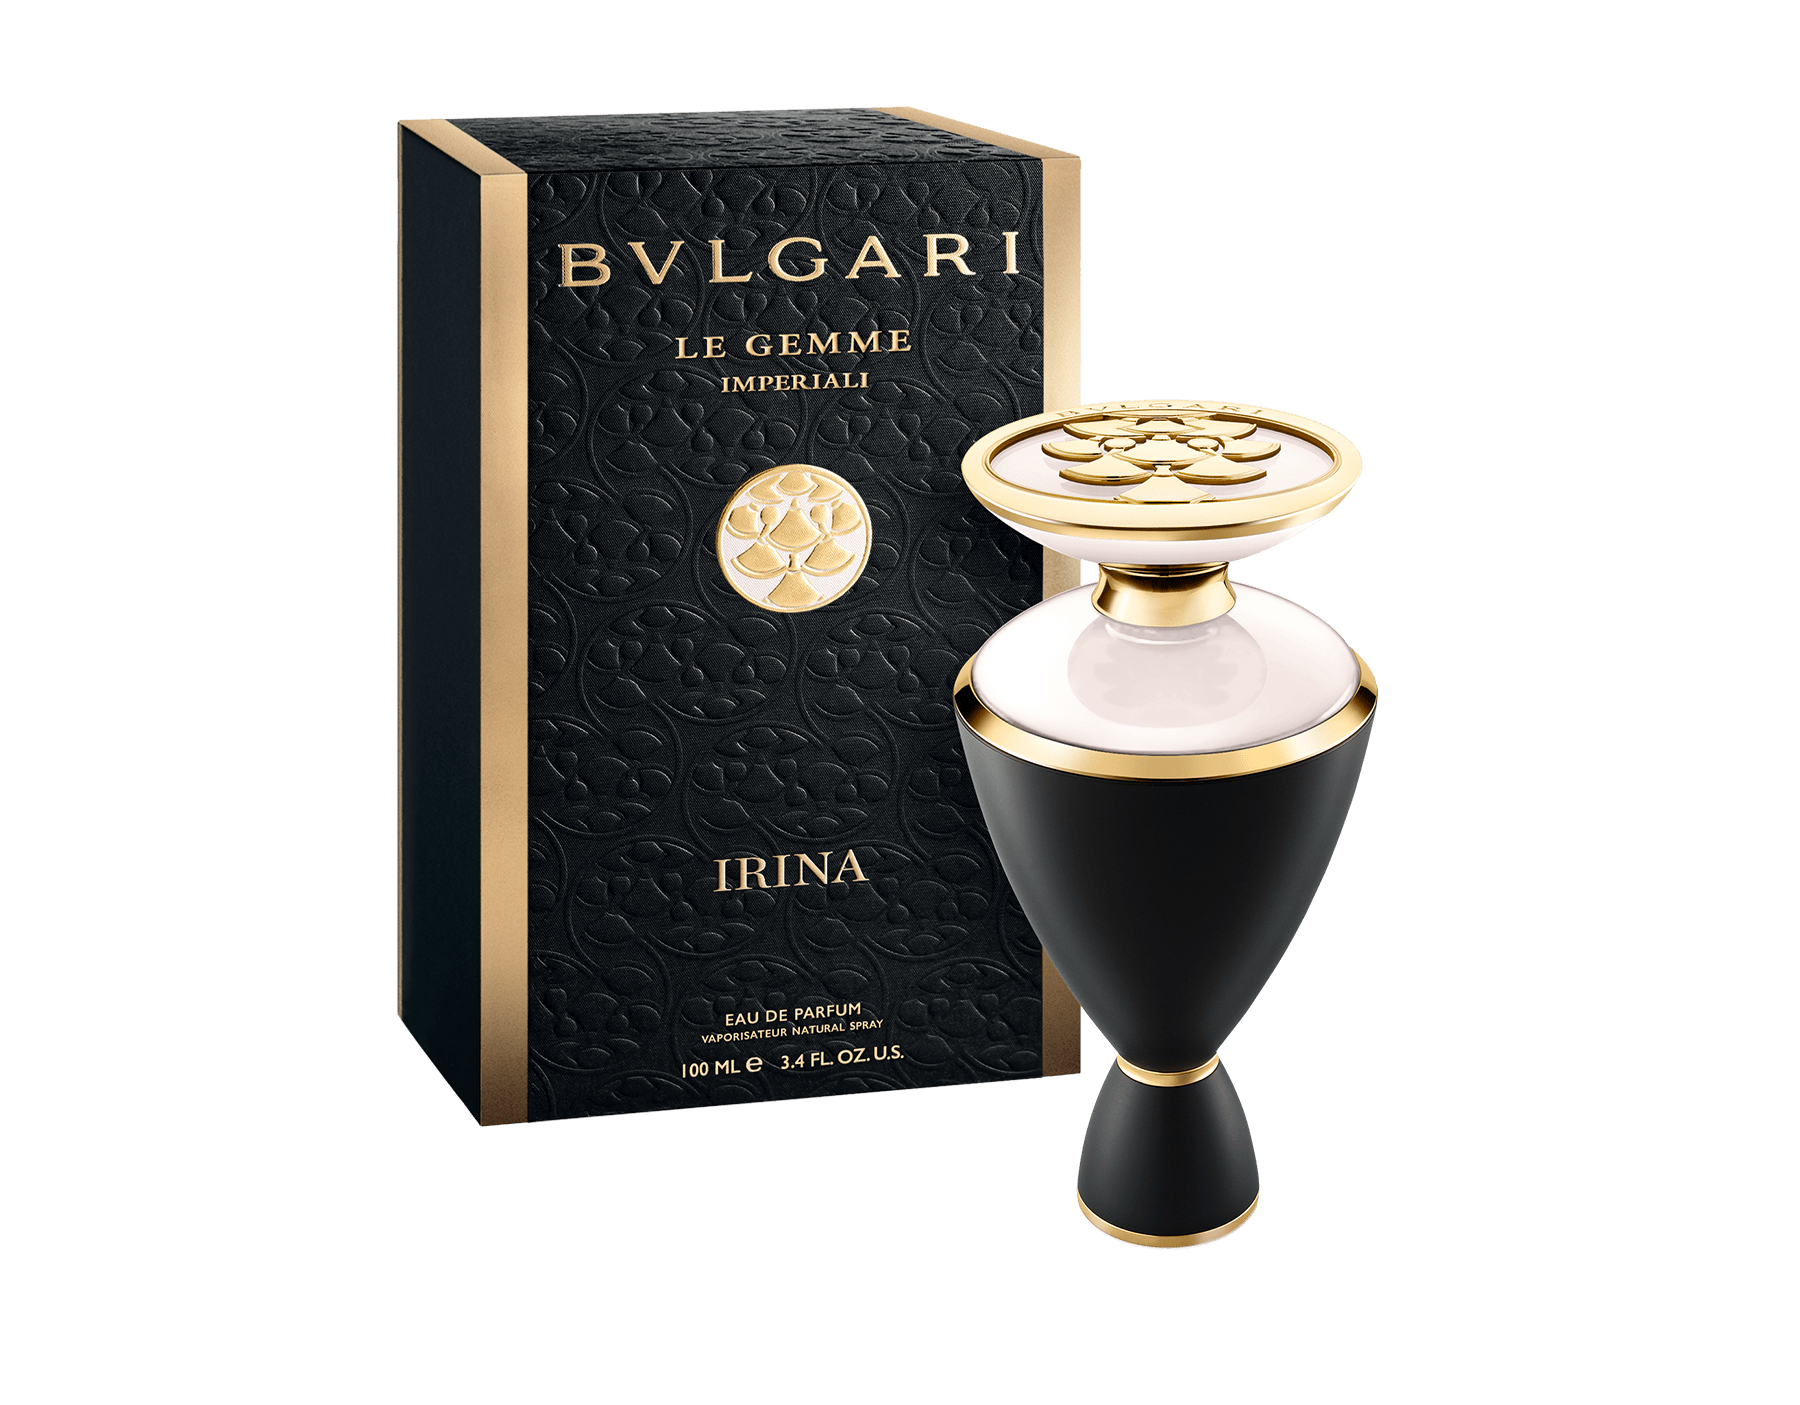 bvlgari perfume online